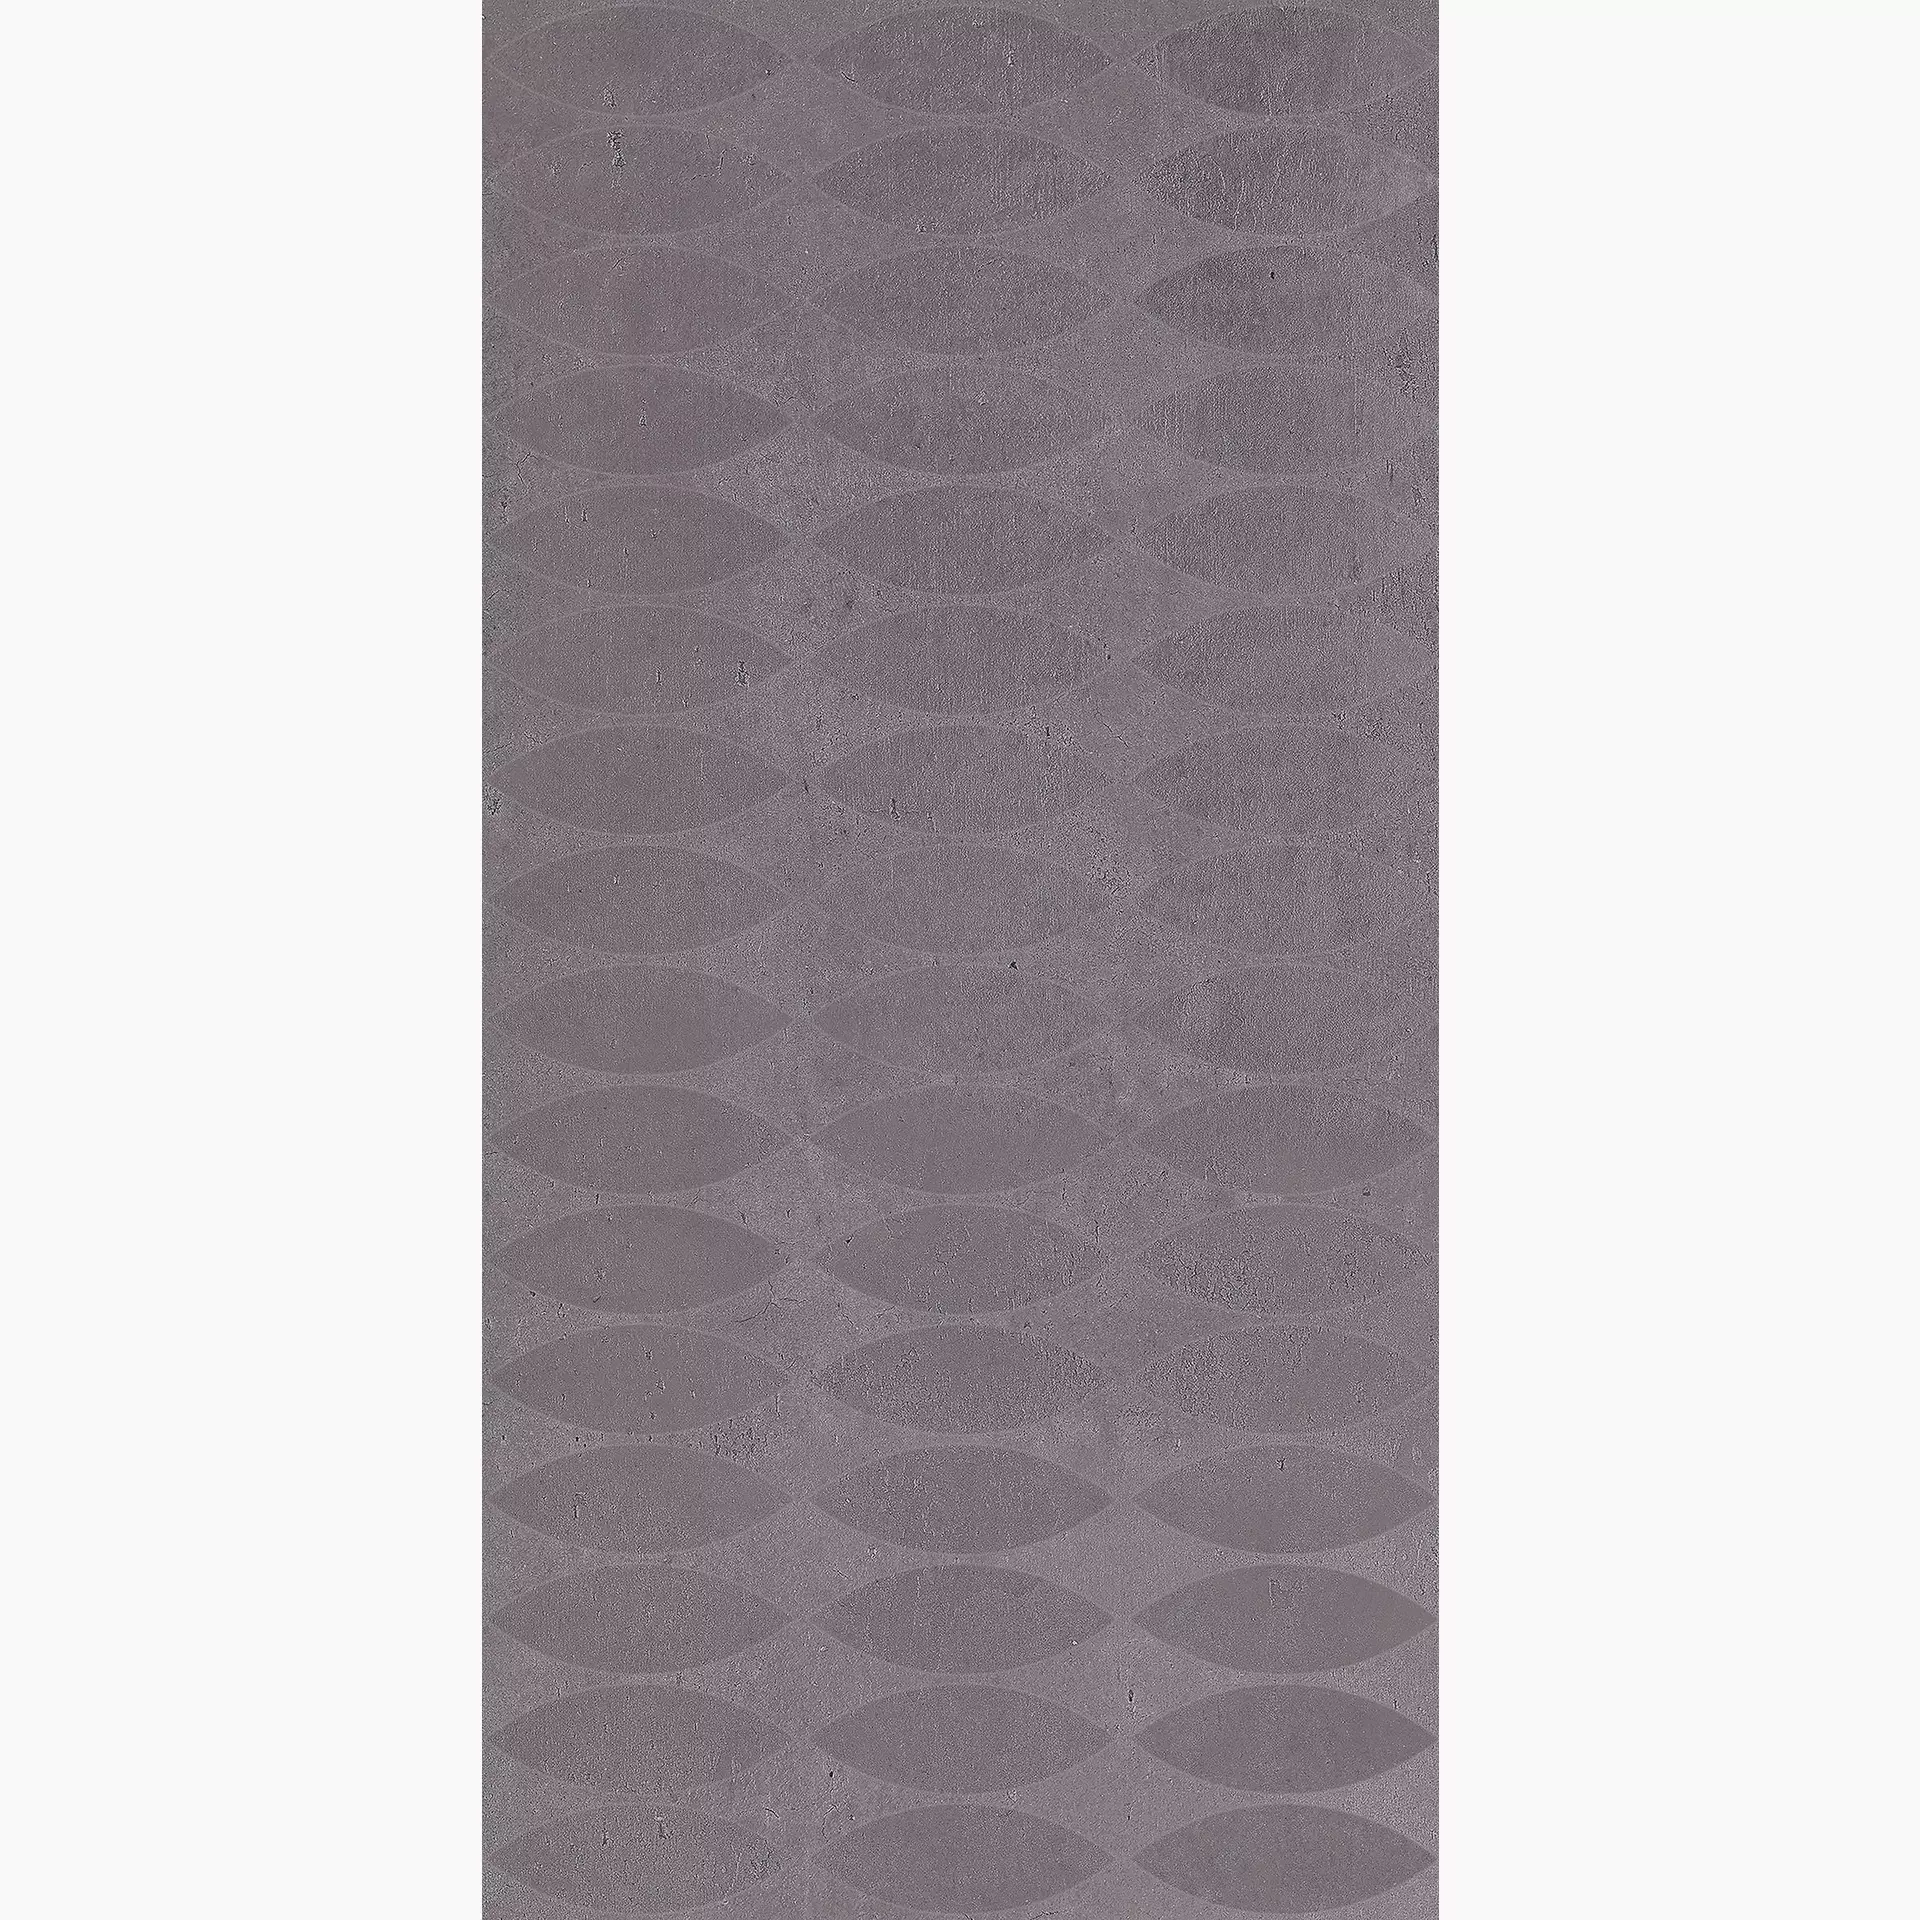 Cerdomus Legarage Grey Matt Decor Spark 81940 30x60cm rectified 9,5mm